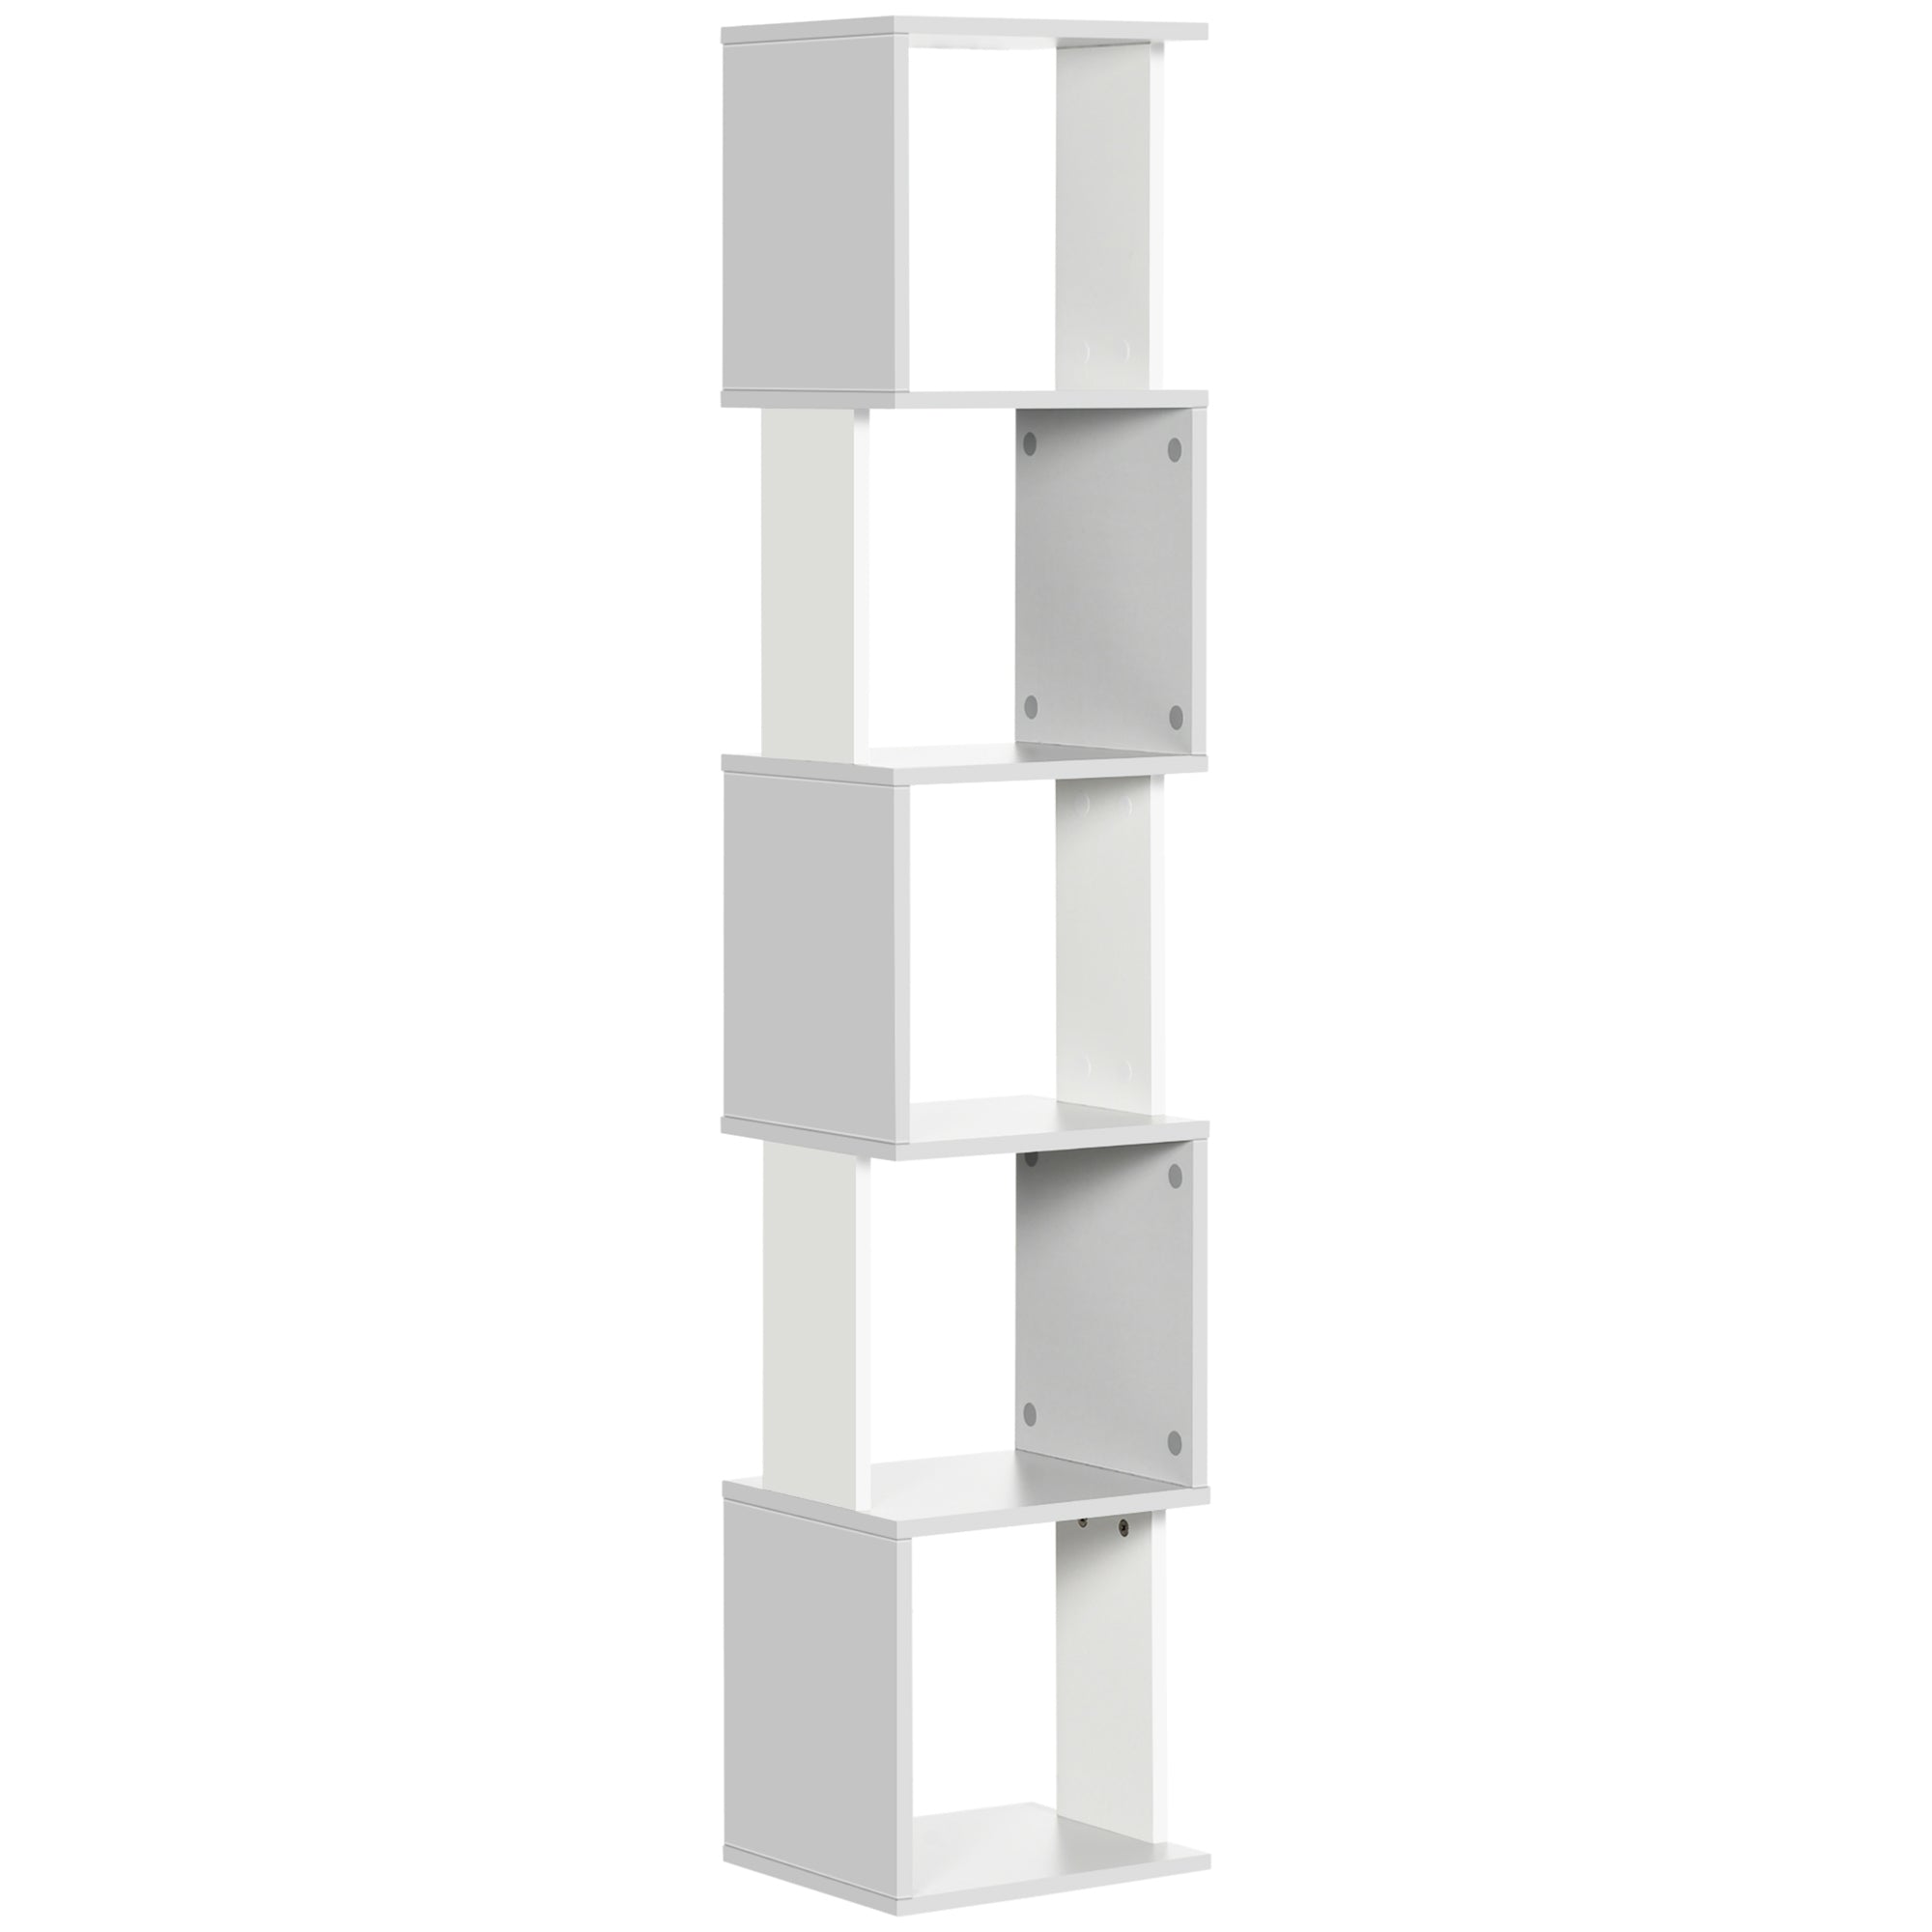 HOMCOM 5-Tier Bookshelf Freestanding Bookcase Storage Shelves Study - Light Grey  | TJ Hughes